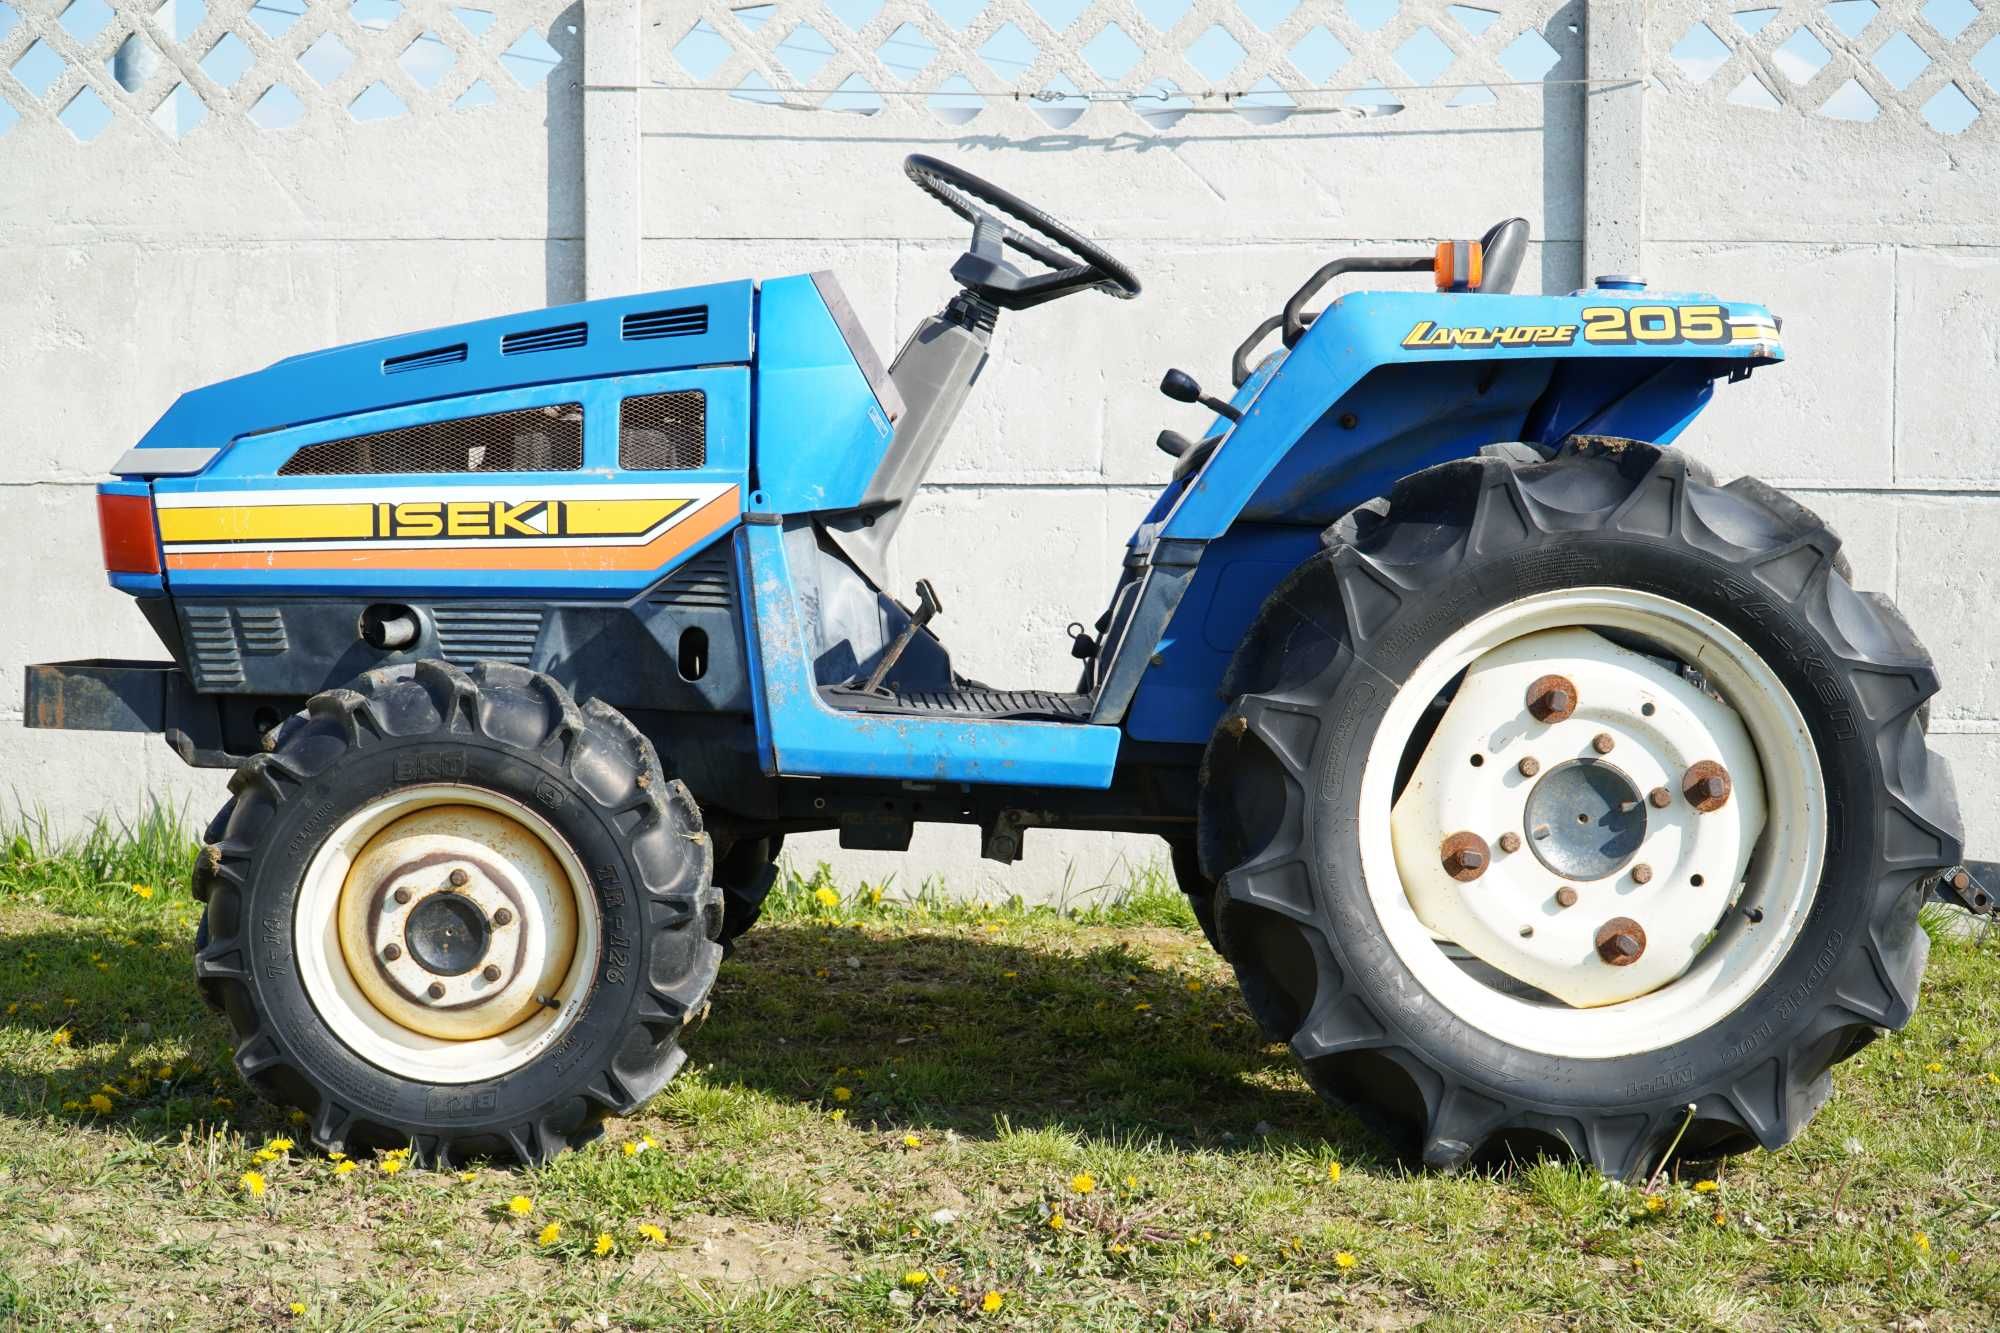 Sprzedam traktorek japoński Iseki TU205, 4x4, 20 KM, glebogryzarka